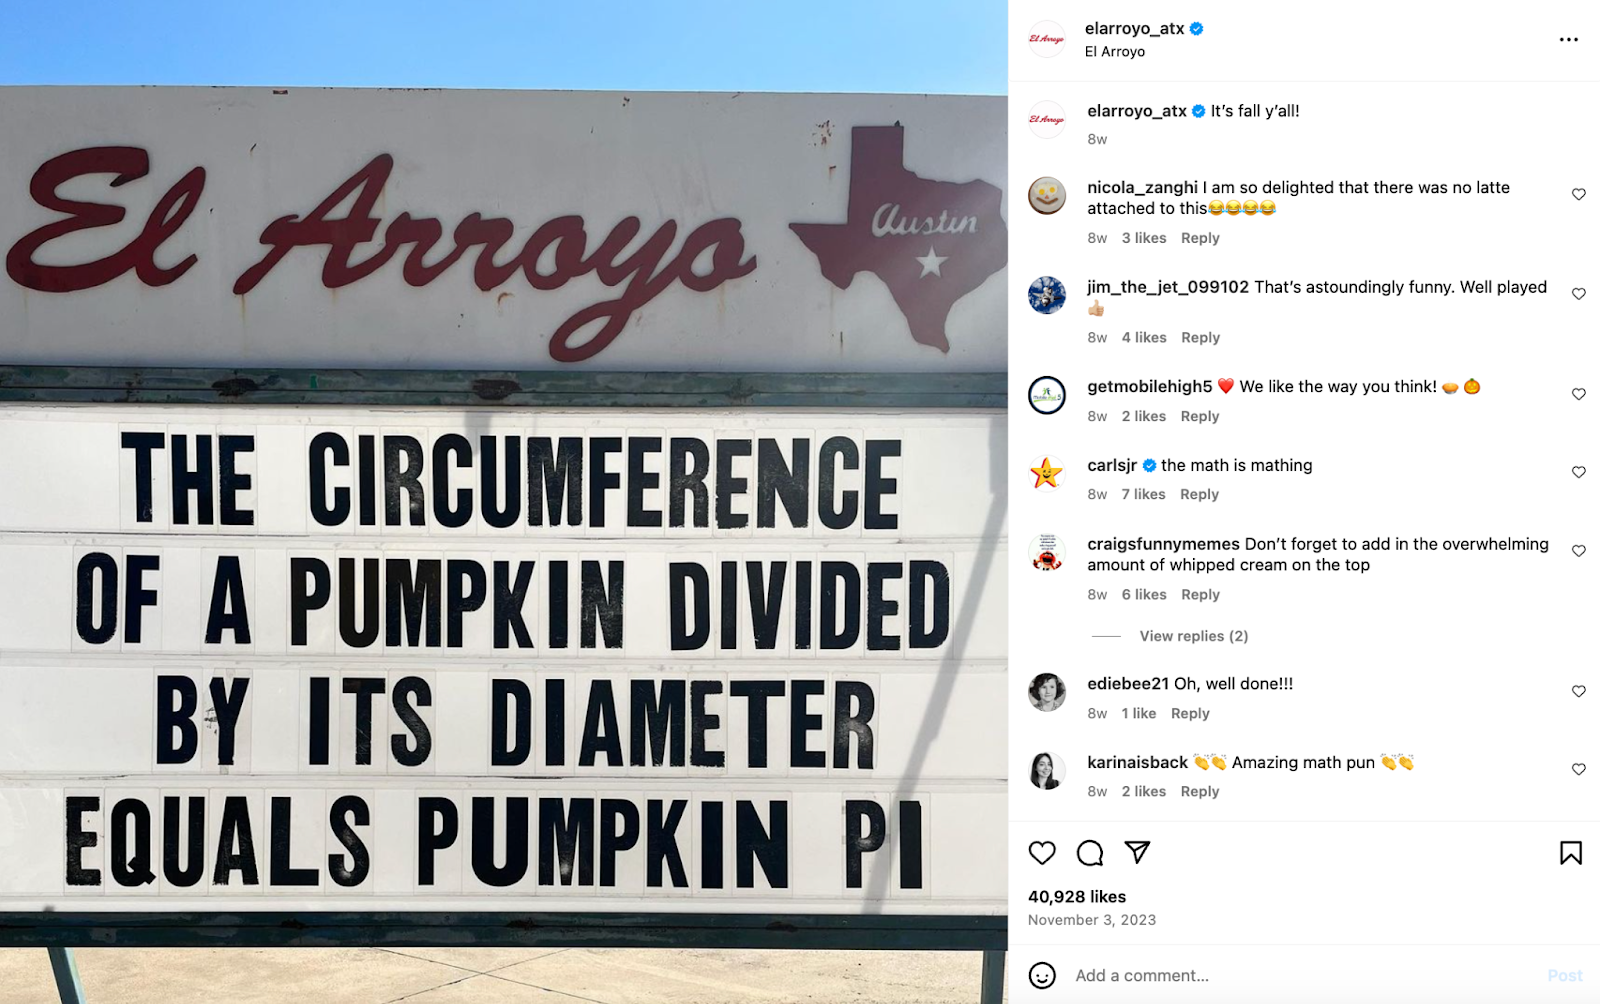 Luovia ravintolamarkkinointiideoita: Austinissa sijaitseva ravintola El Arroyo on kuuluisa telttakyltistä, joka näyttää röyhkeitä sanontoja ja vitsejä.